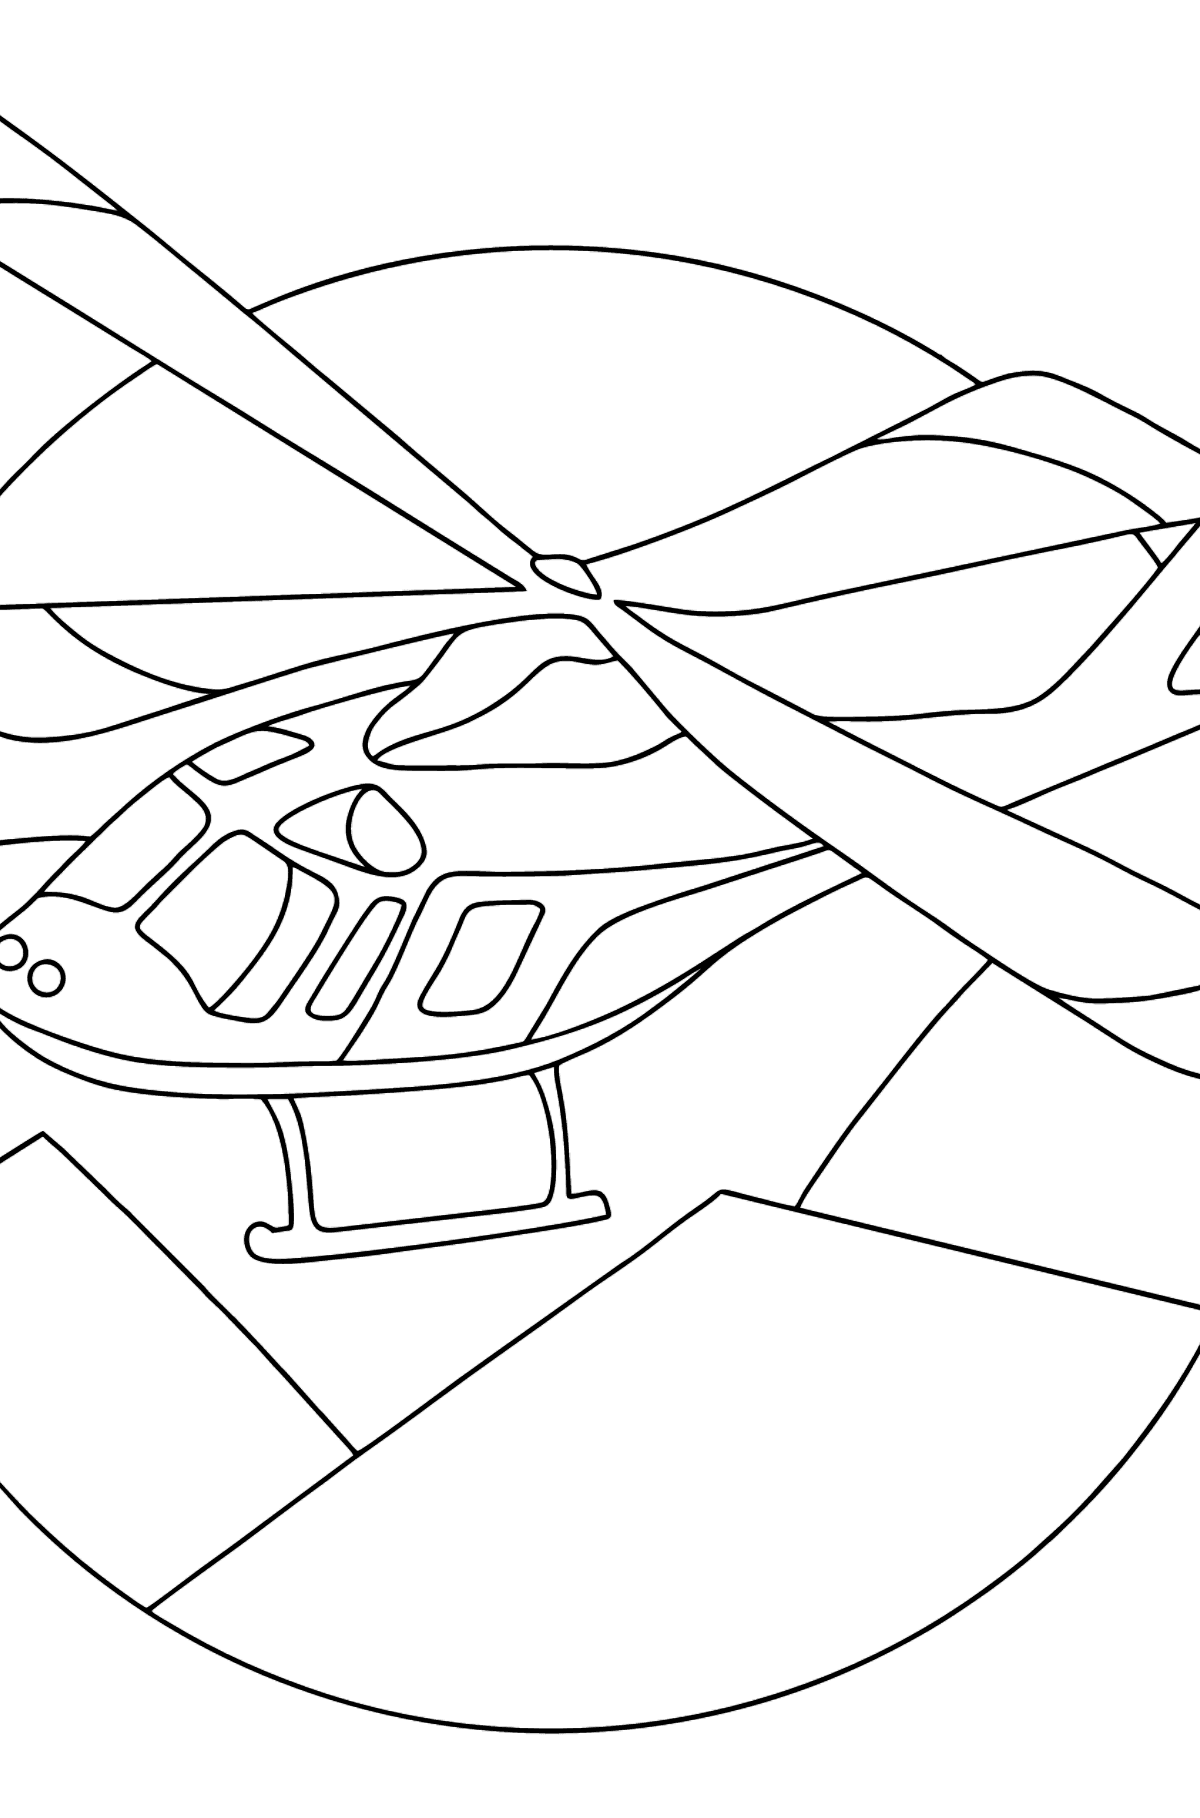 Disegni da colorare - Un elicottero sportivo - Disegni da colorare per bambini